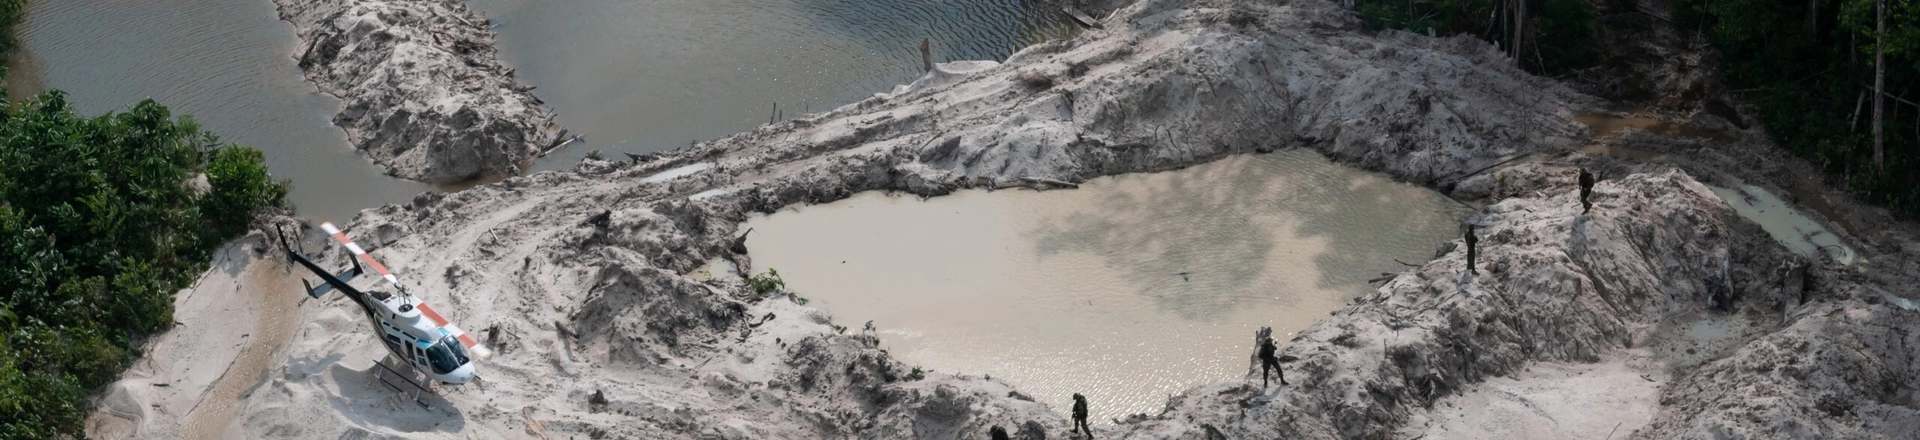 Grupo Especializado de Fiscalização do Ibama desativa garimpos ilegais nos parques nacionais do Jamanxim e do Rio Novo, no Pará, áreas de proteção integral.